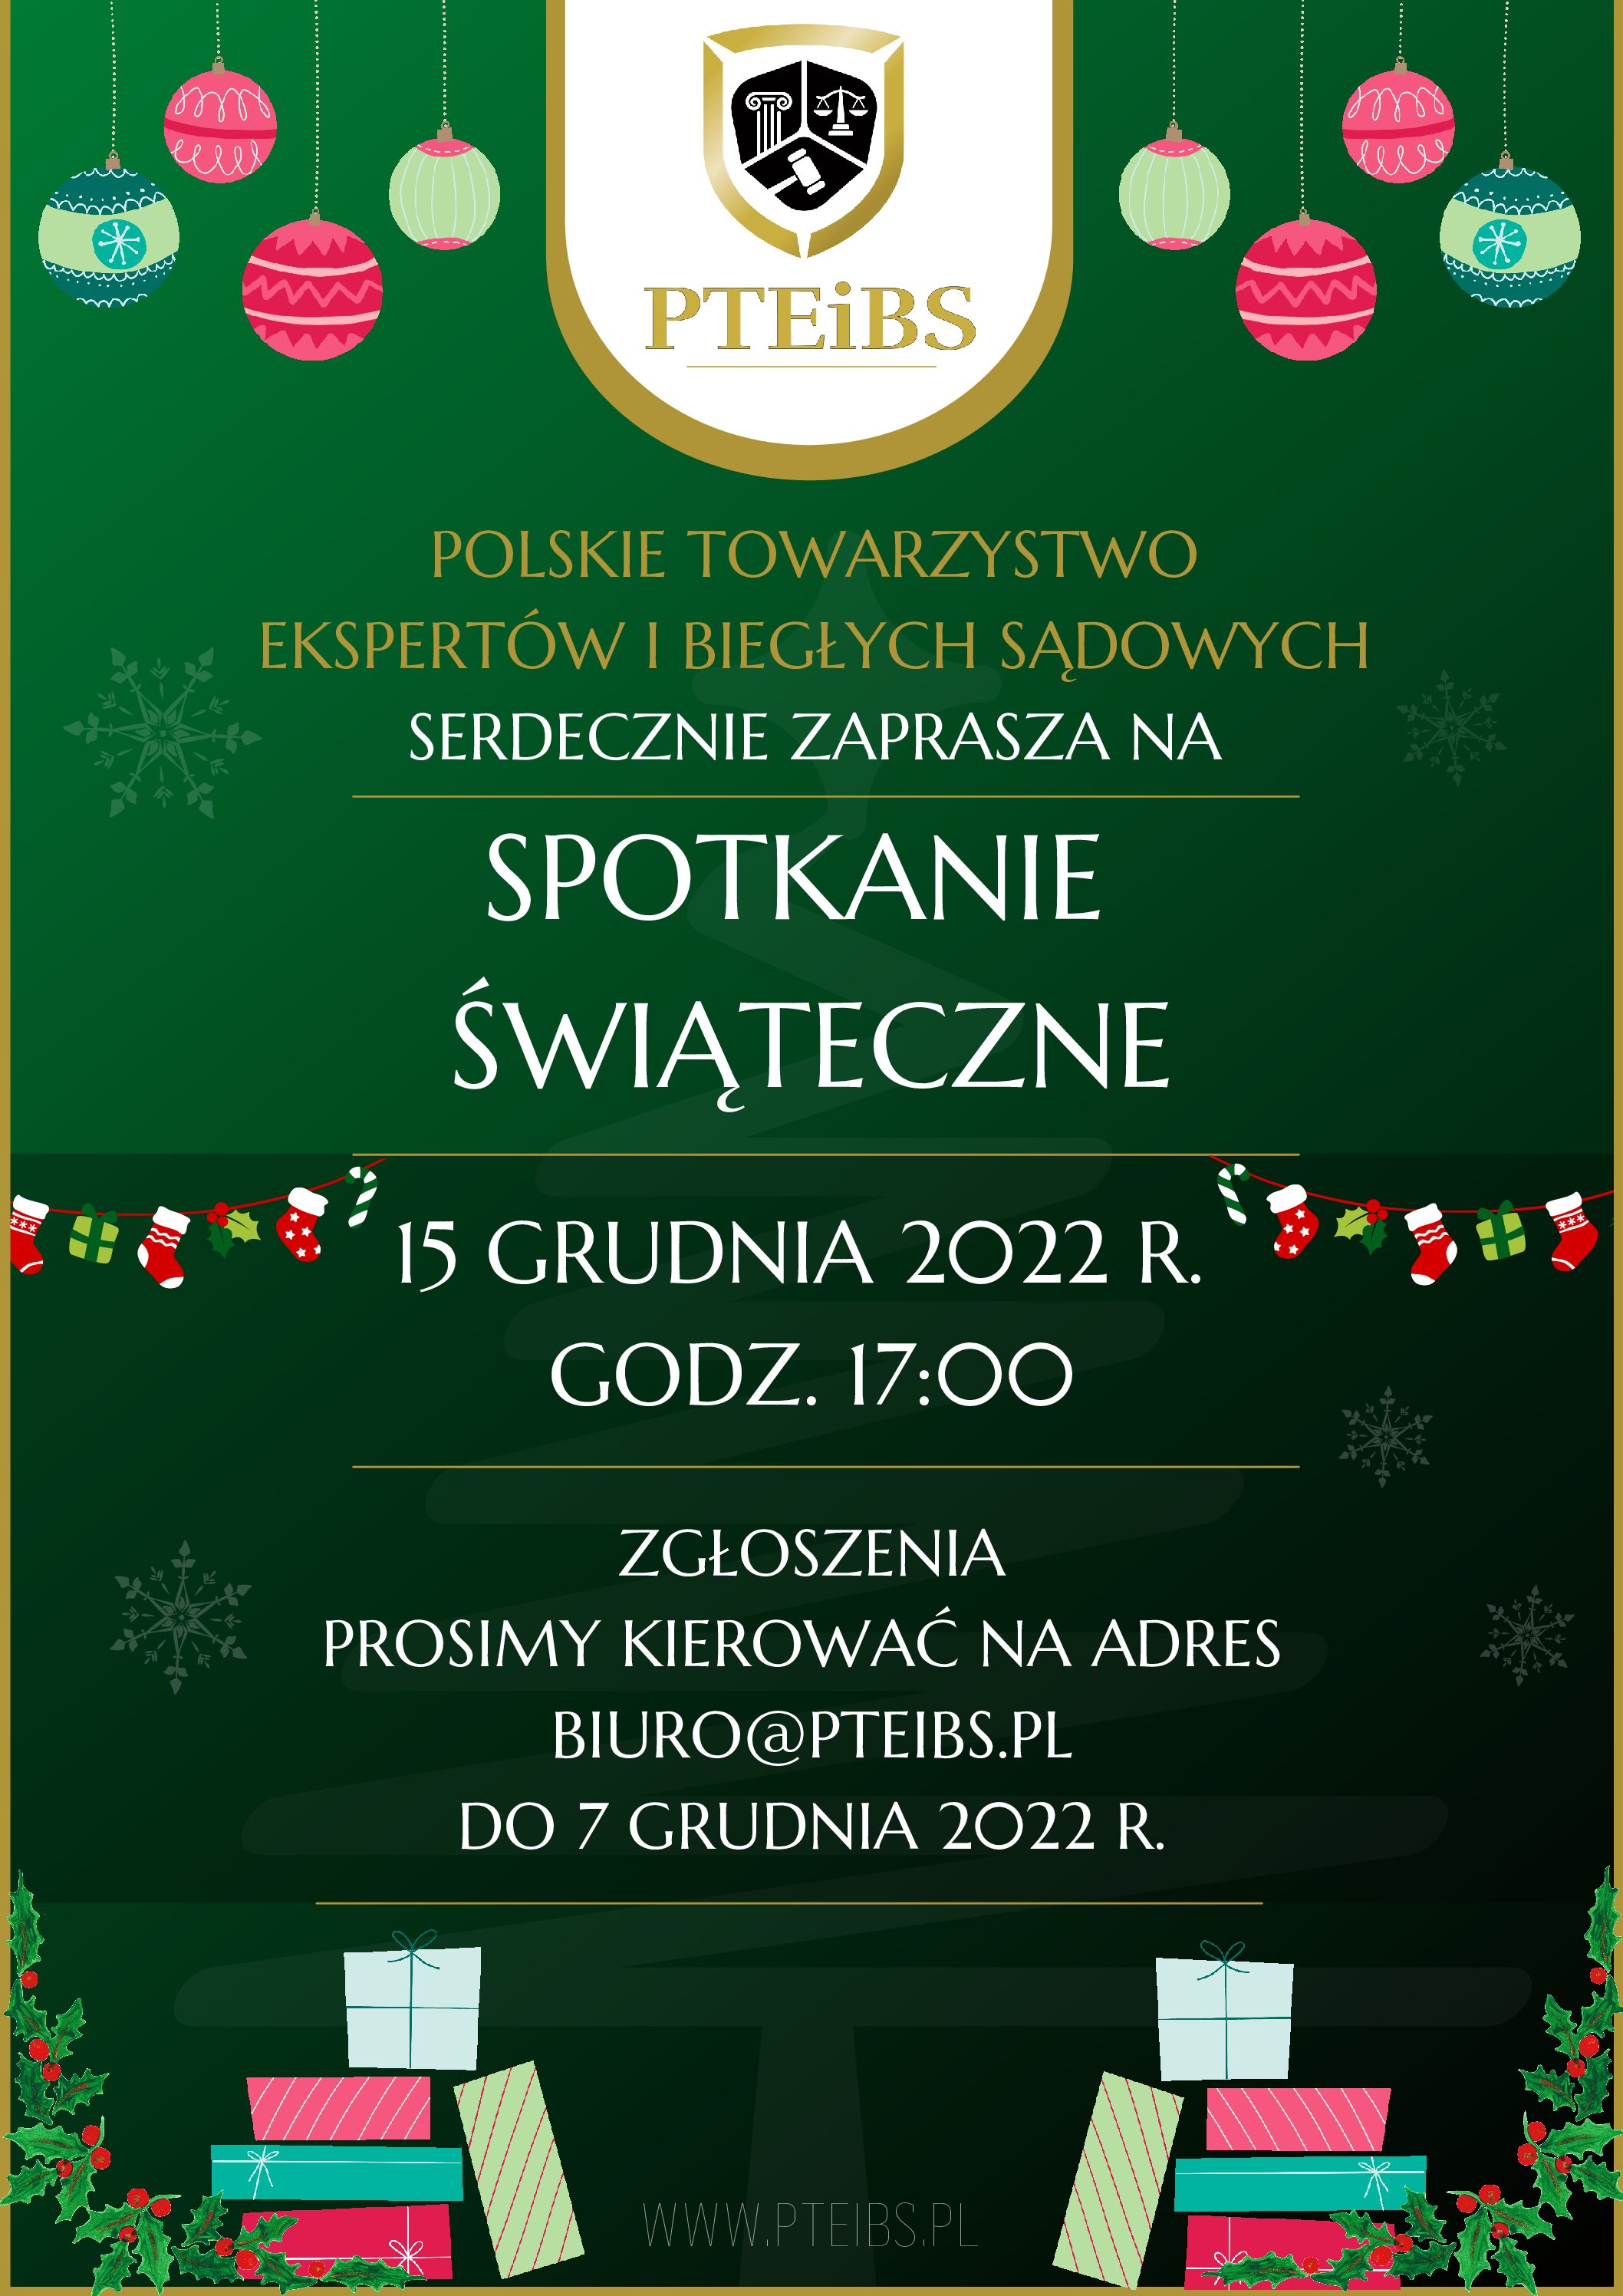 Spotkanie świąteczne Polskiego Towarzystwa Ekspertów i Biegłych Sądowych